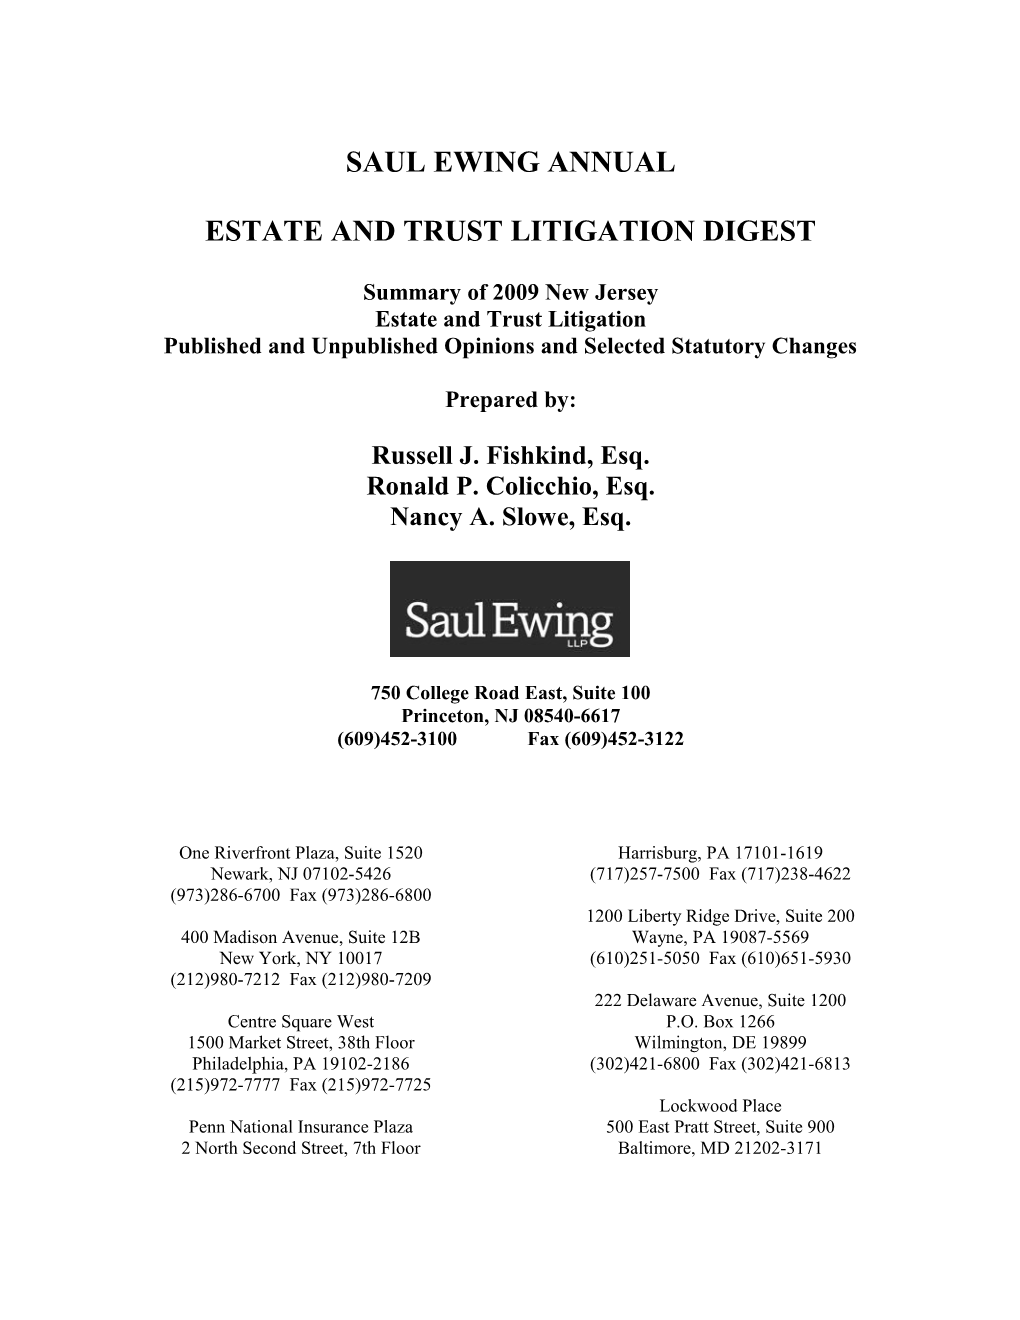 Estate and Trust Litigation Digest